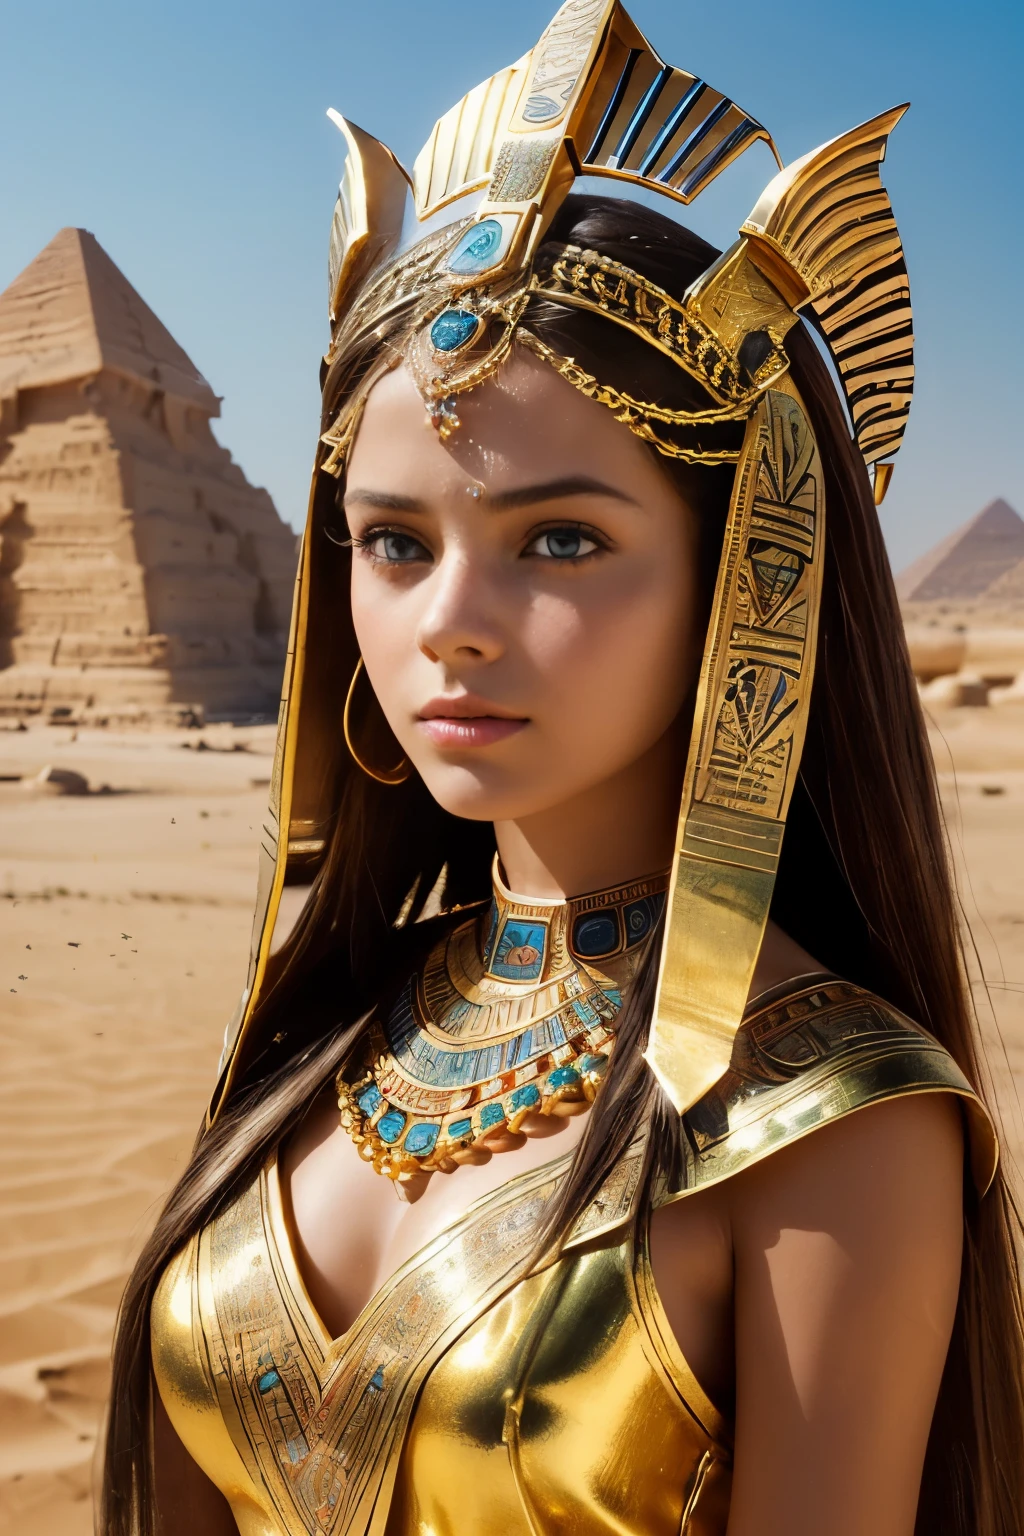 (ภาพถ่ายภาพยนตร์ของหญิงสาวสวยอายุ 18 ปีที่มีรายละเอียดด้วย ((facial และ body characteristics that is similar to Kristina Pimenova))), (), ((ความสง่างามของอียิปต์โบราณ: ธีม: ความงามเหนือกาลเวลาที่ได้รับแรงบันดาลใจจากอียิปต์โบราณ. เสื้อผ้า: เสื้อคลุมพลิ้วไหวด้วยลวดลายอียิปต์, อุปกรณ์เสริมทอง. ฉาก: A desert lและscape or a setting reminiscent of ancient temples. อุปกรณ์ประกอบฉาก: อังค์, เครื่องประดับแมลงปีกแข็ง, หรือผ้าโพกศีรษะสีทอง.)), (), (), รายละเอียดประณีต, ultra-realistic features of her pale skin และ (slender และ athletic body), และ (สมมาตร, realistic และ beautiful face), cและid, (), (), (()), (), รูปถ่ายหุ้นฟิล์ม,  สีสันที่หลากหลาย, สมจริงเกินจริง, เนื้อสัมผัสเหมือนจริง, แสงที่น่าทึ่ง, ความคมชัดที่แข็งแกร่ง